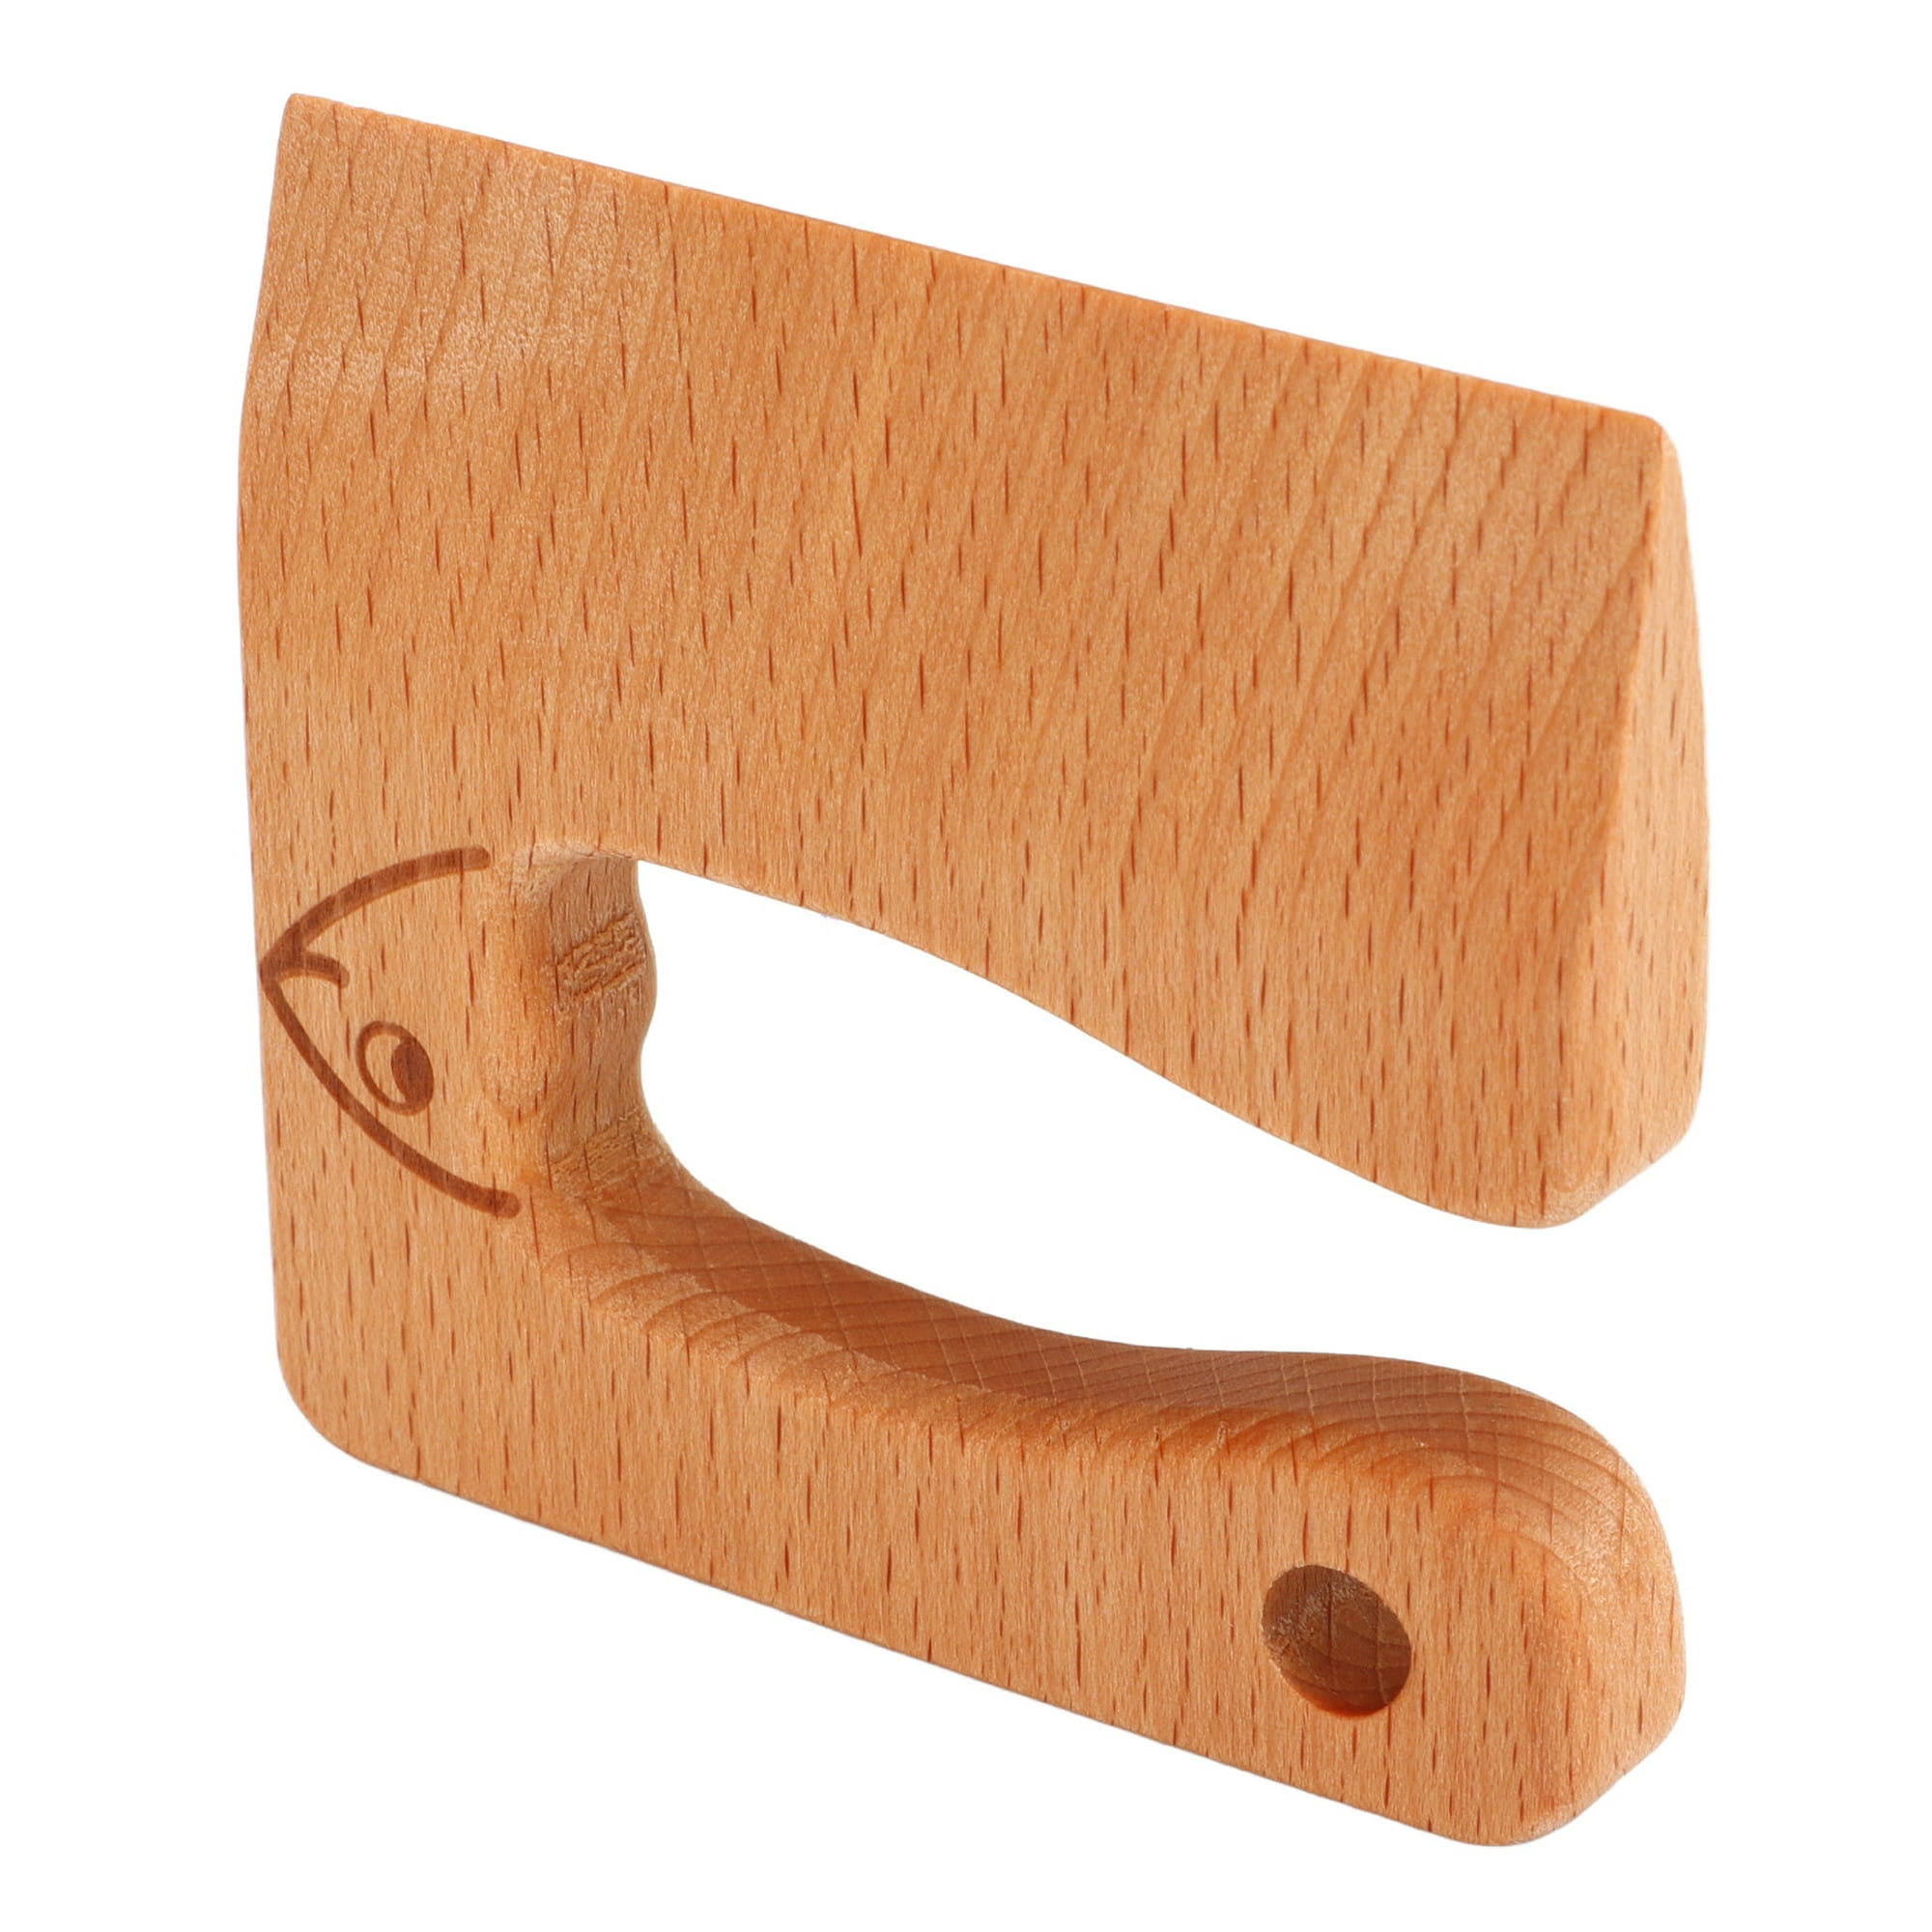 Cuchillo de madera seguro para niños utensilios educativos